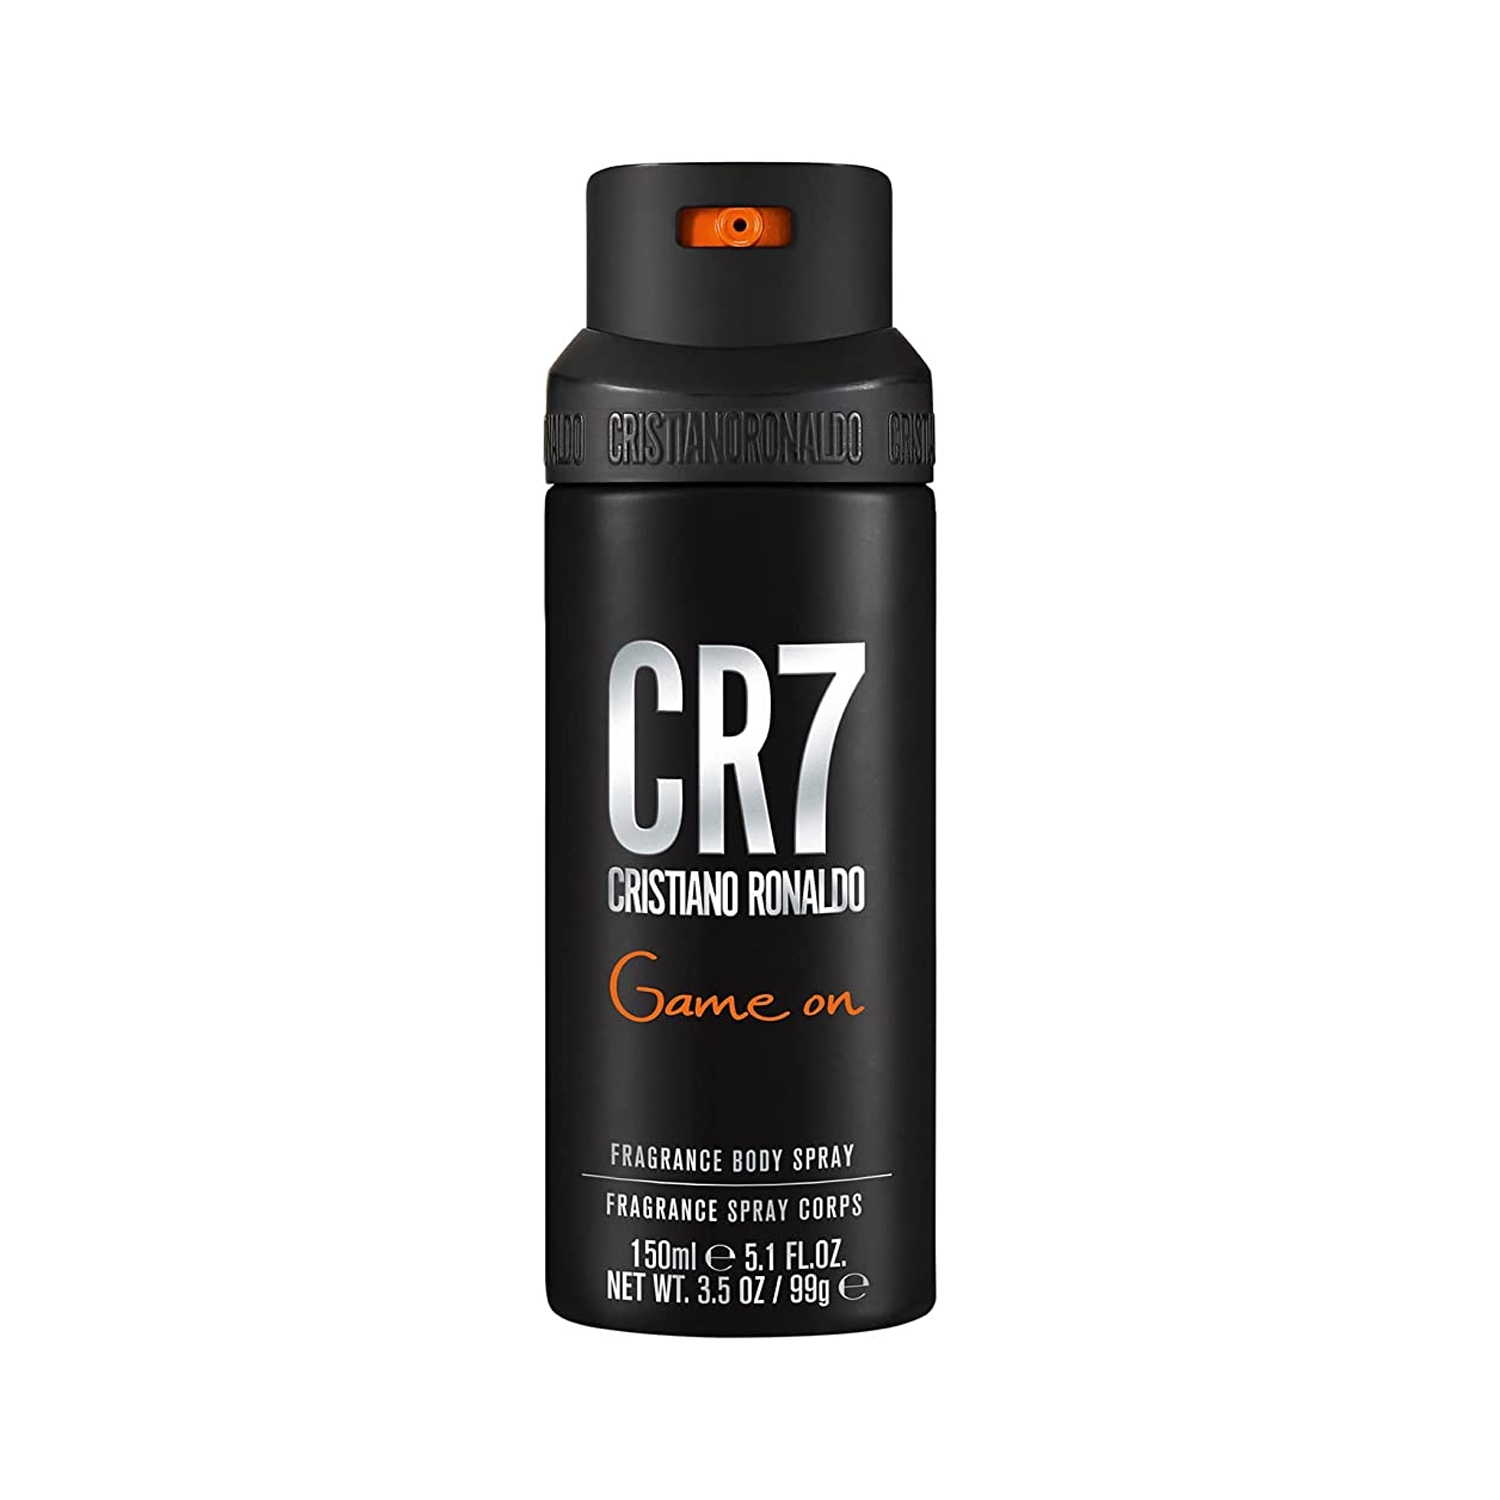 Cristiano Ronaldo CR7 Game On Fragrance Body Spray (150ml)